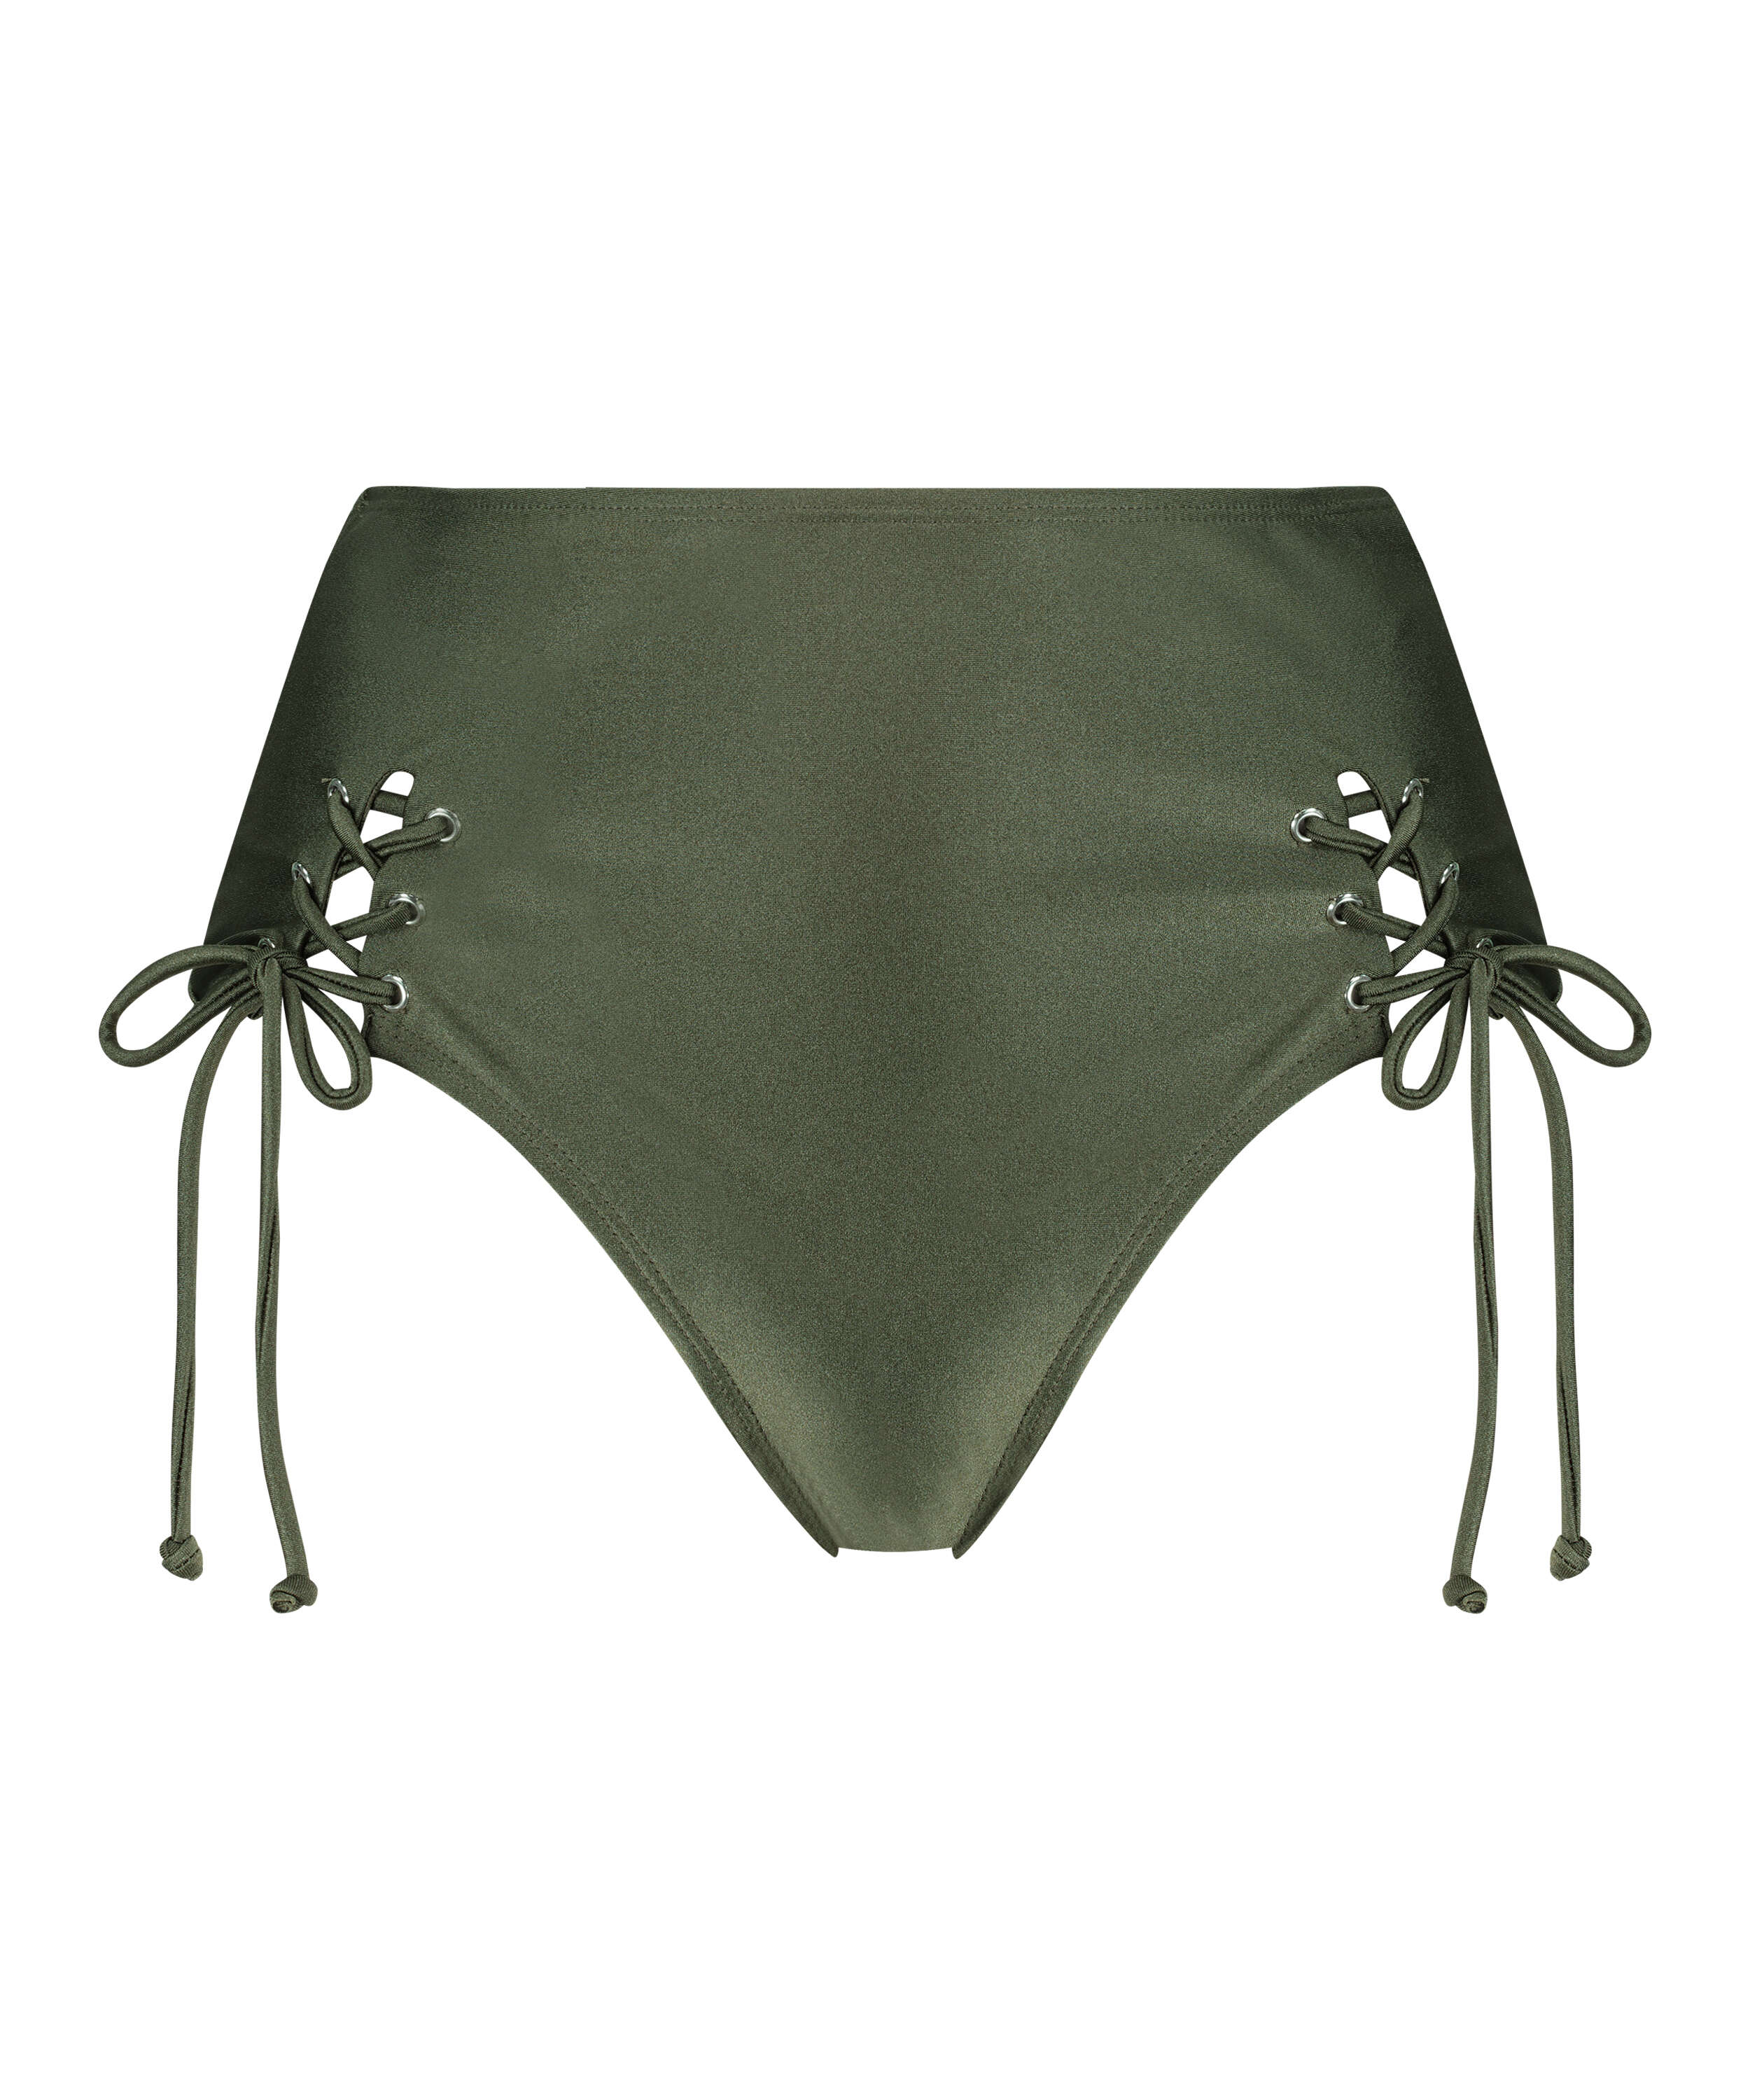 Lucia high-cut cheeky bikini bottoms, Green, main